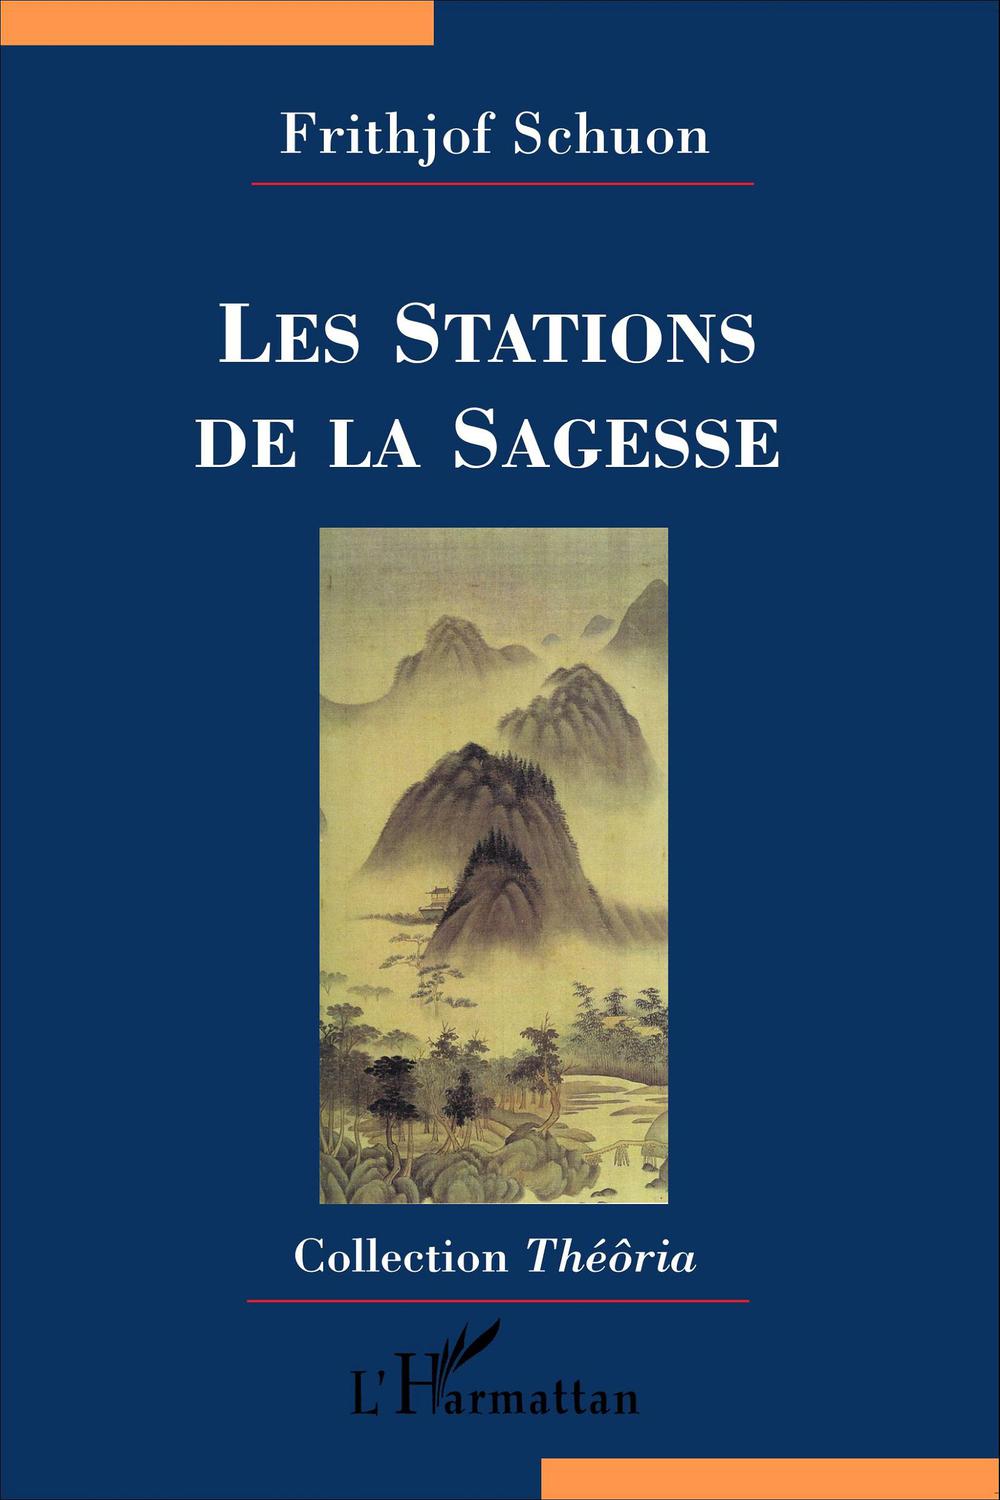 Les Stations de la Sagesse - Frithjof Schuon